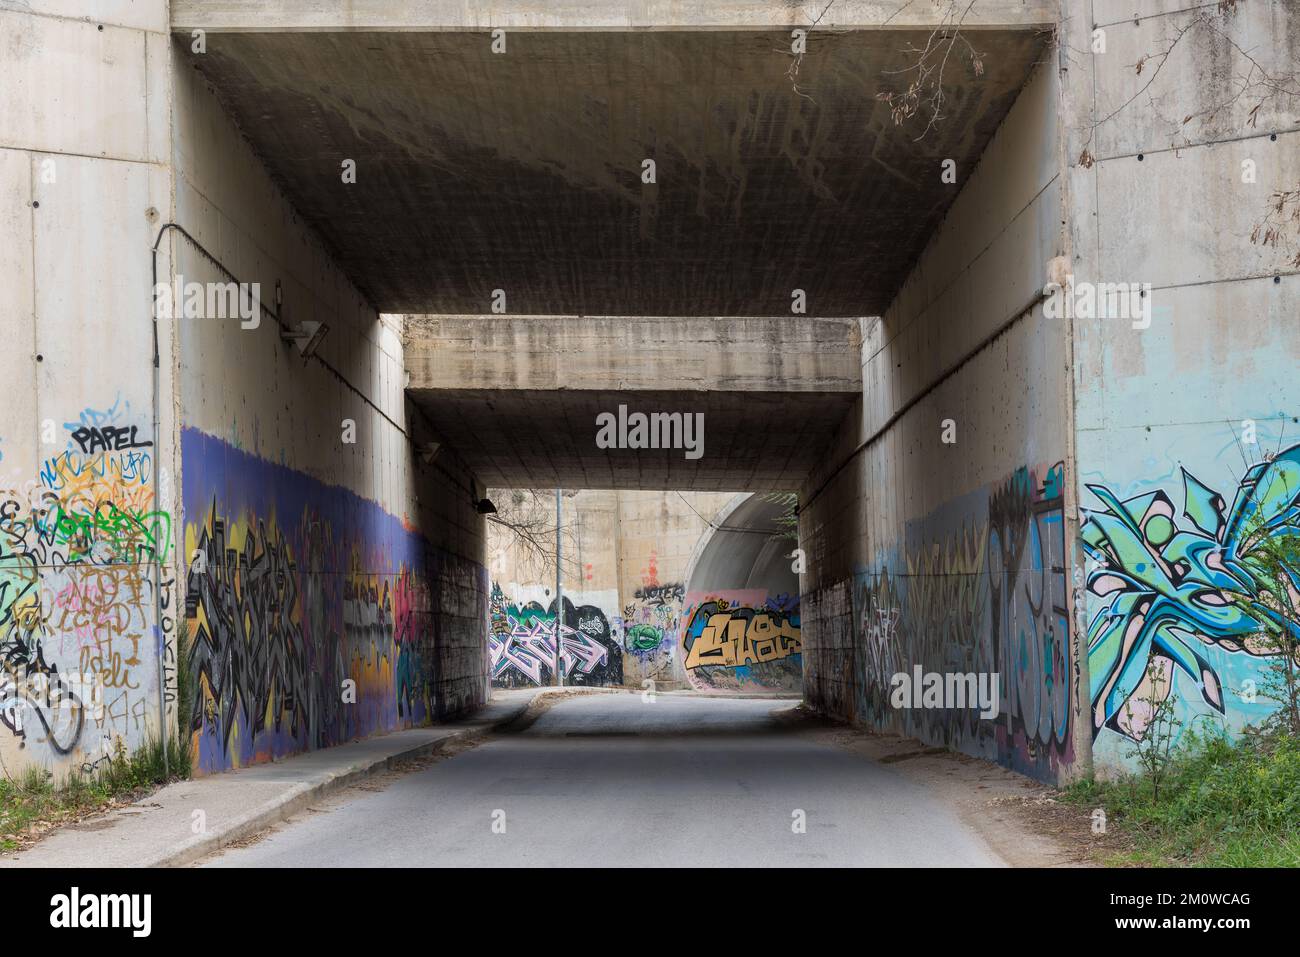 Barcelone, Espagne -2 avril 2016: Ponts avec leurs murs pleins de graffiti. Expression artistique ou acte de vandalisme Banque D'Images